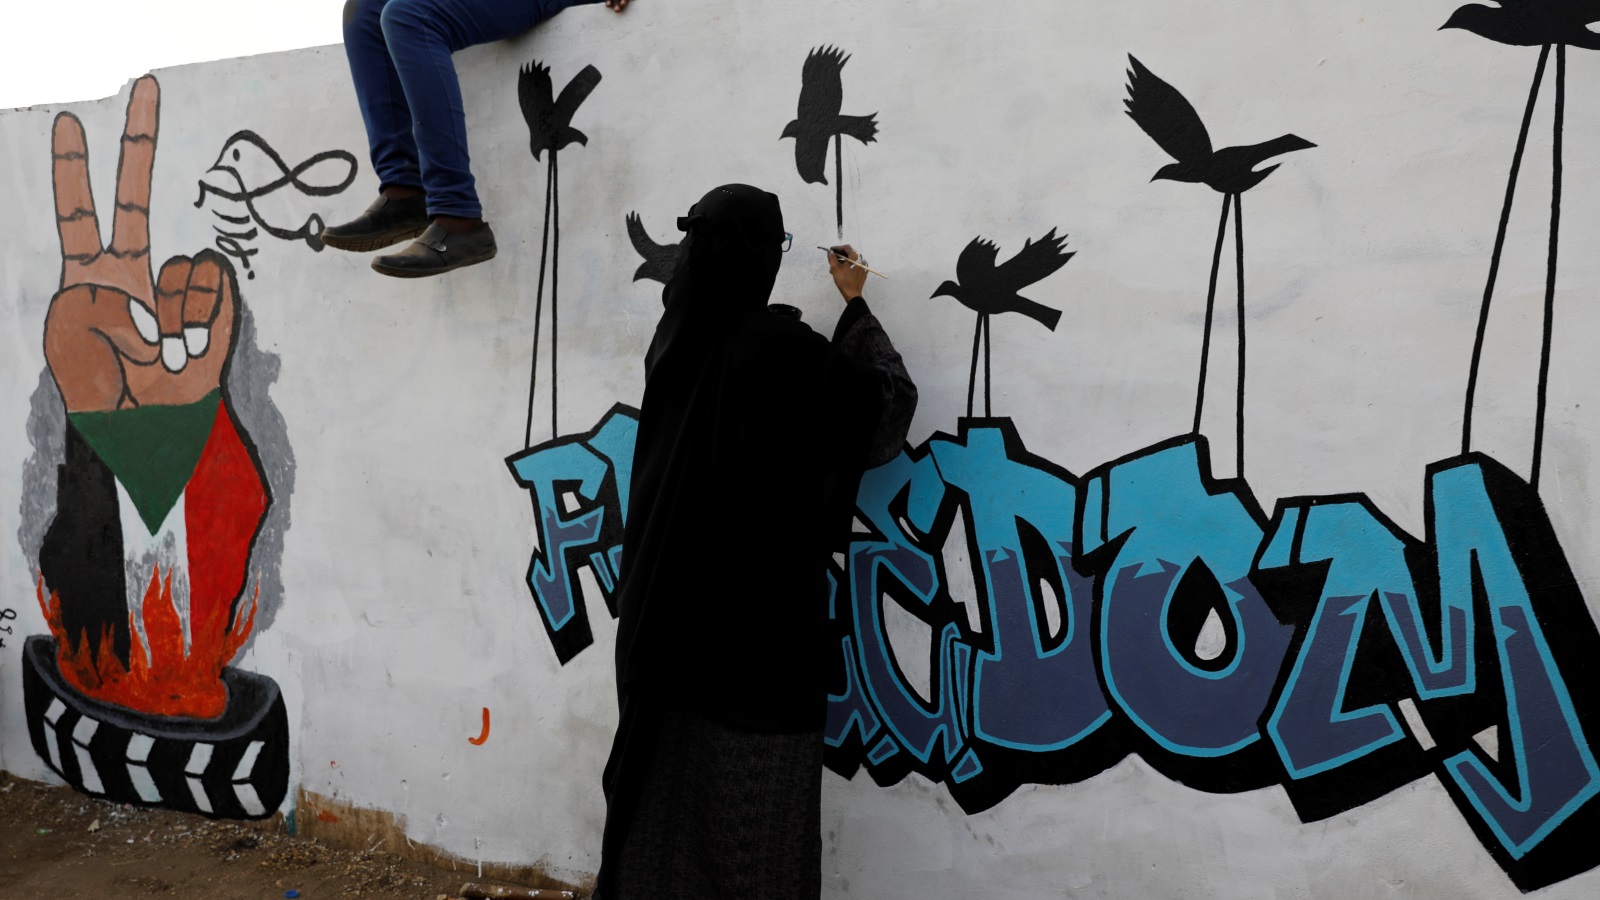 جدارية لفتاة تجسد أحلام الثورة في التغيير والحرية (رويترز)